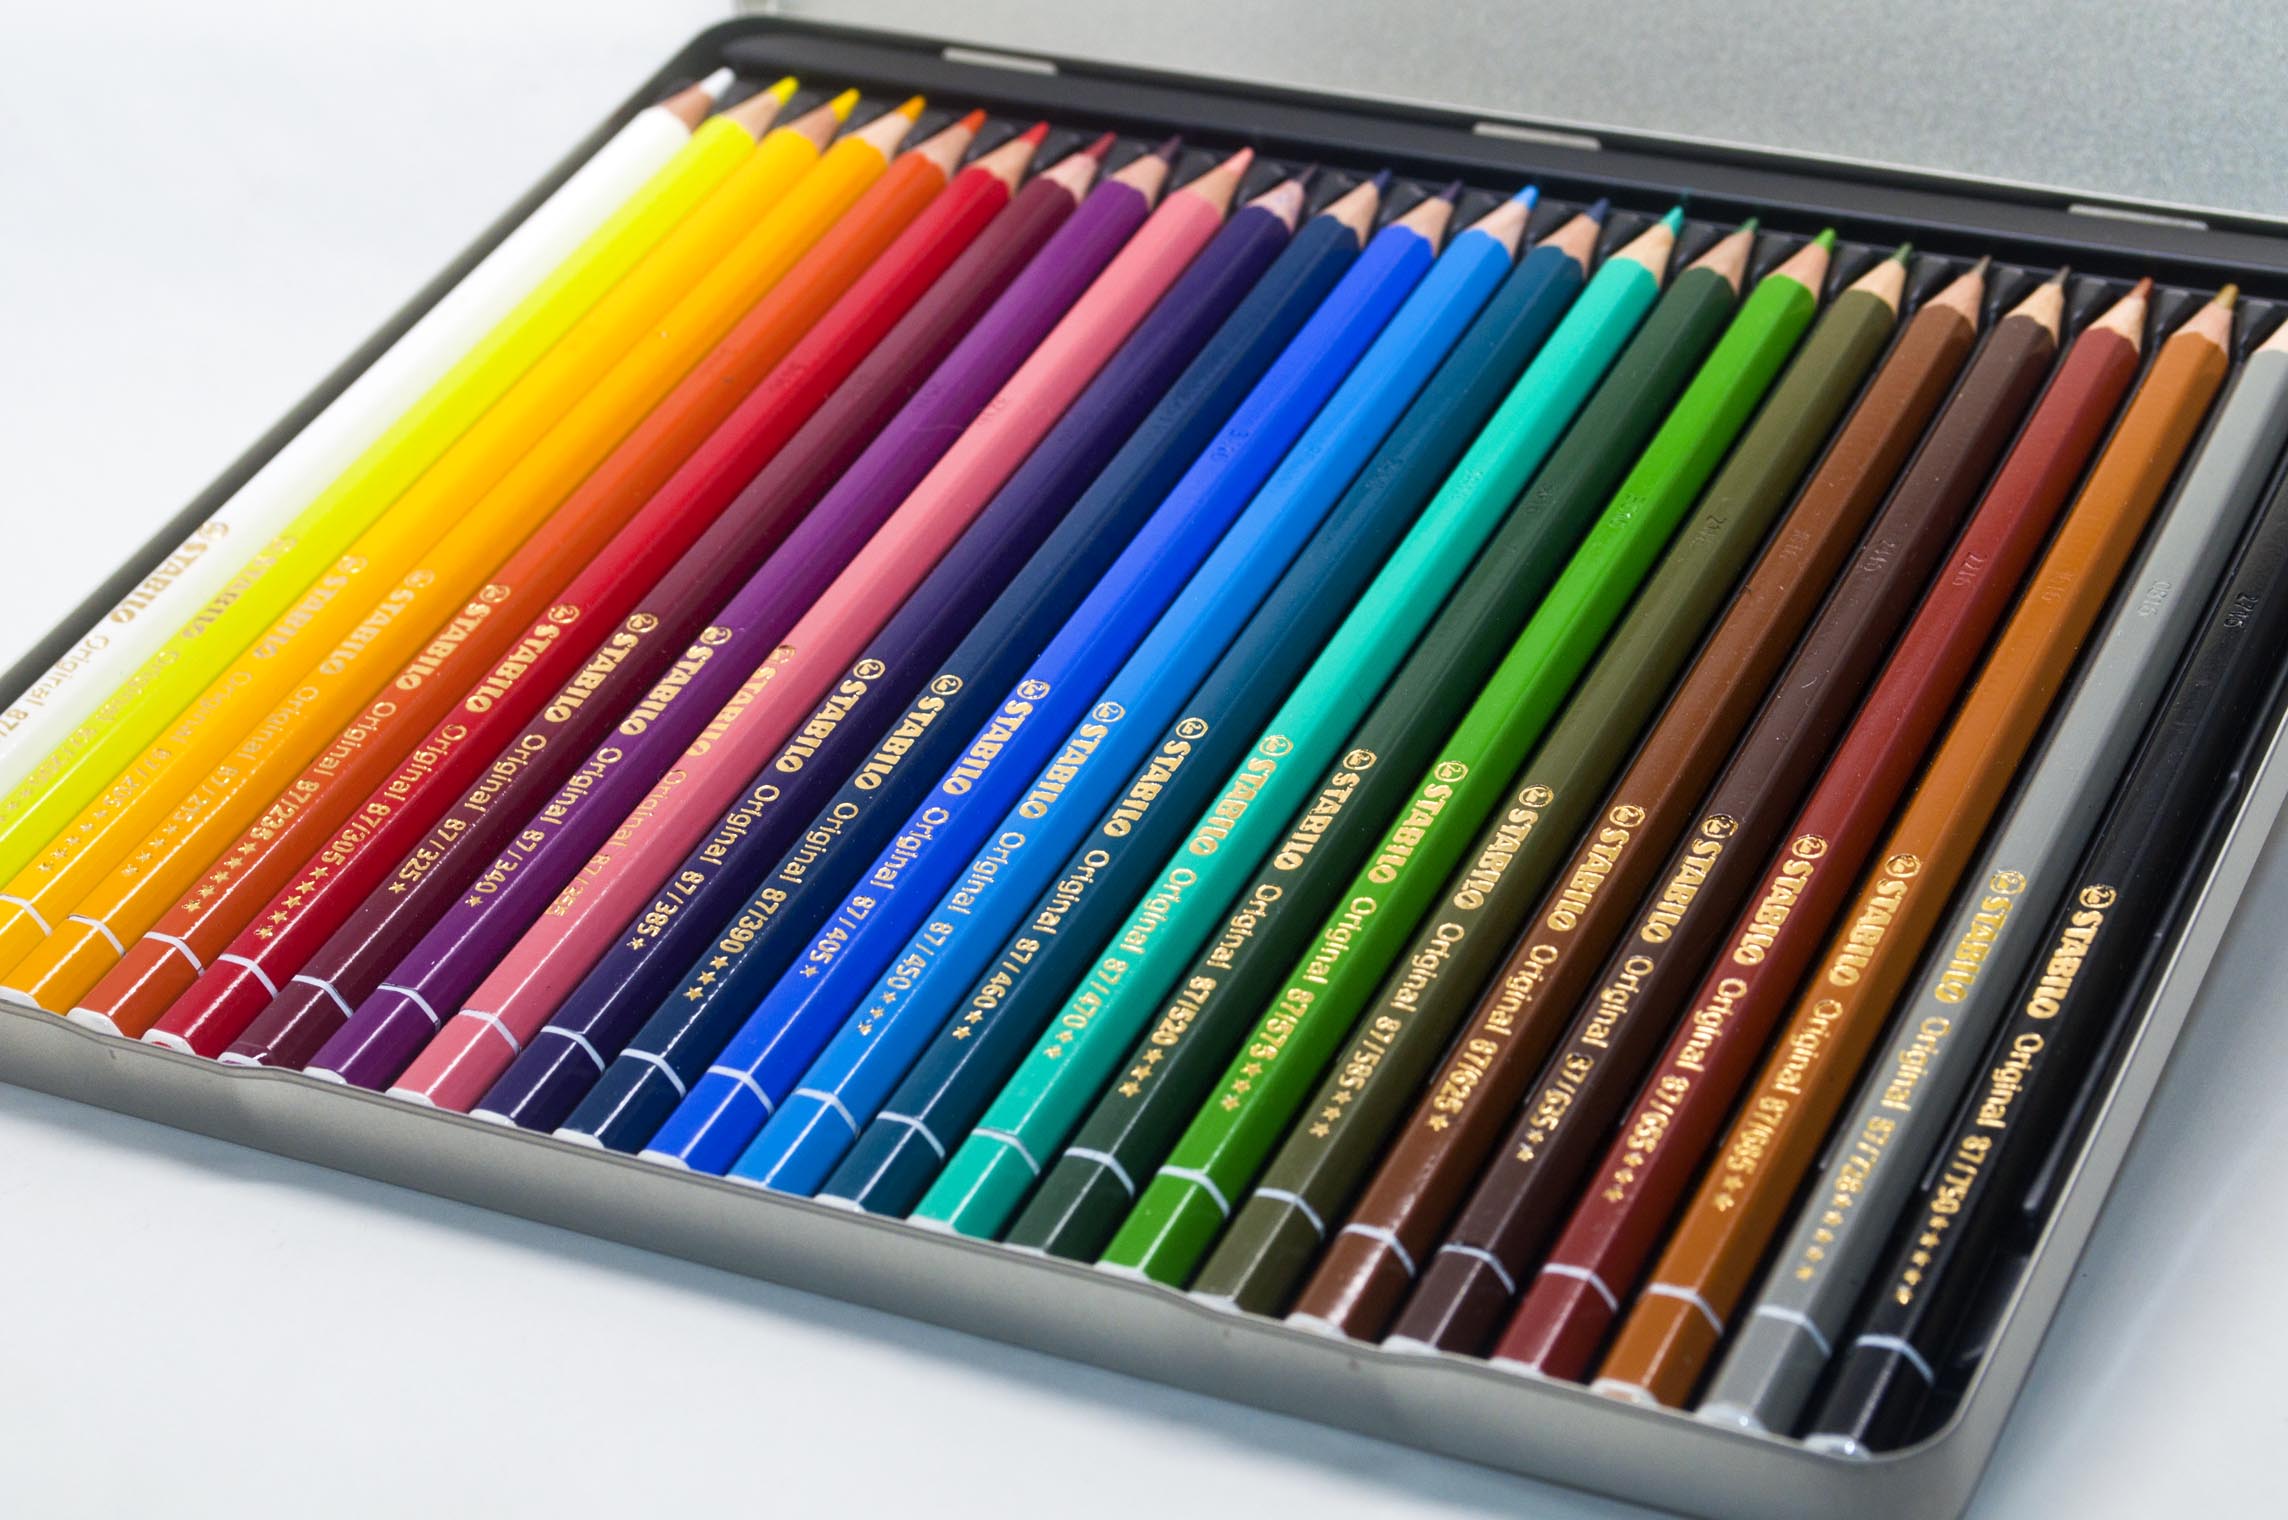 All STABILO colored pencils